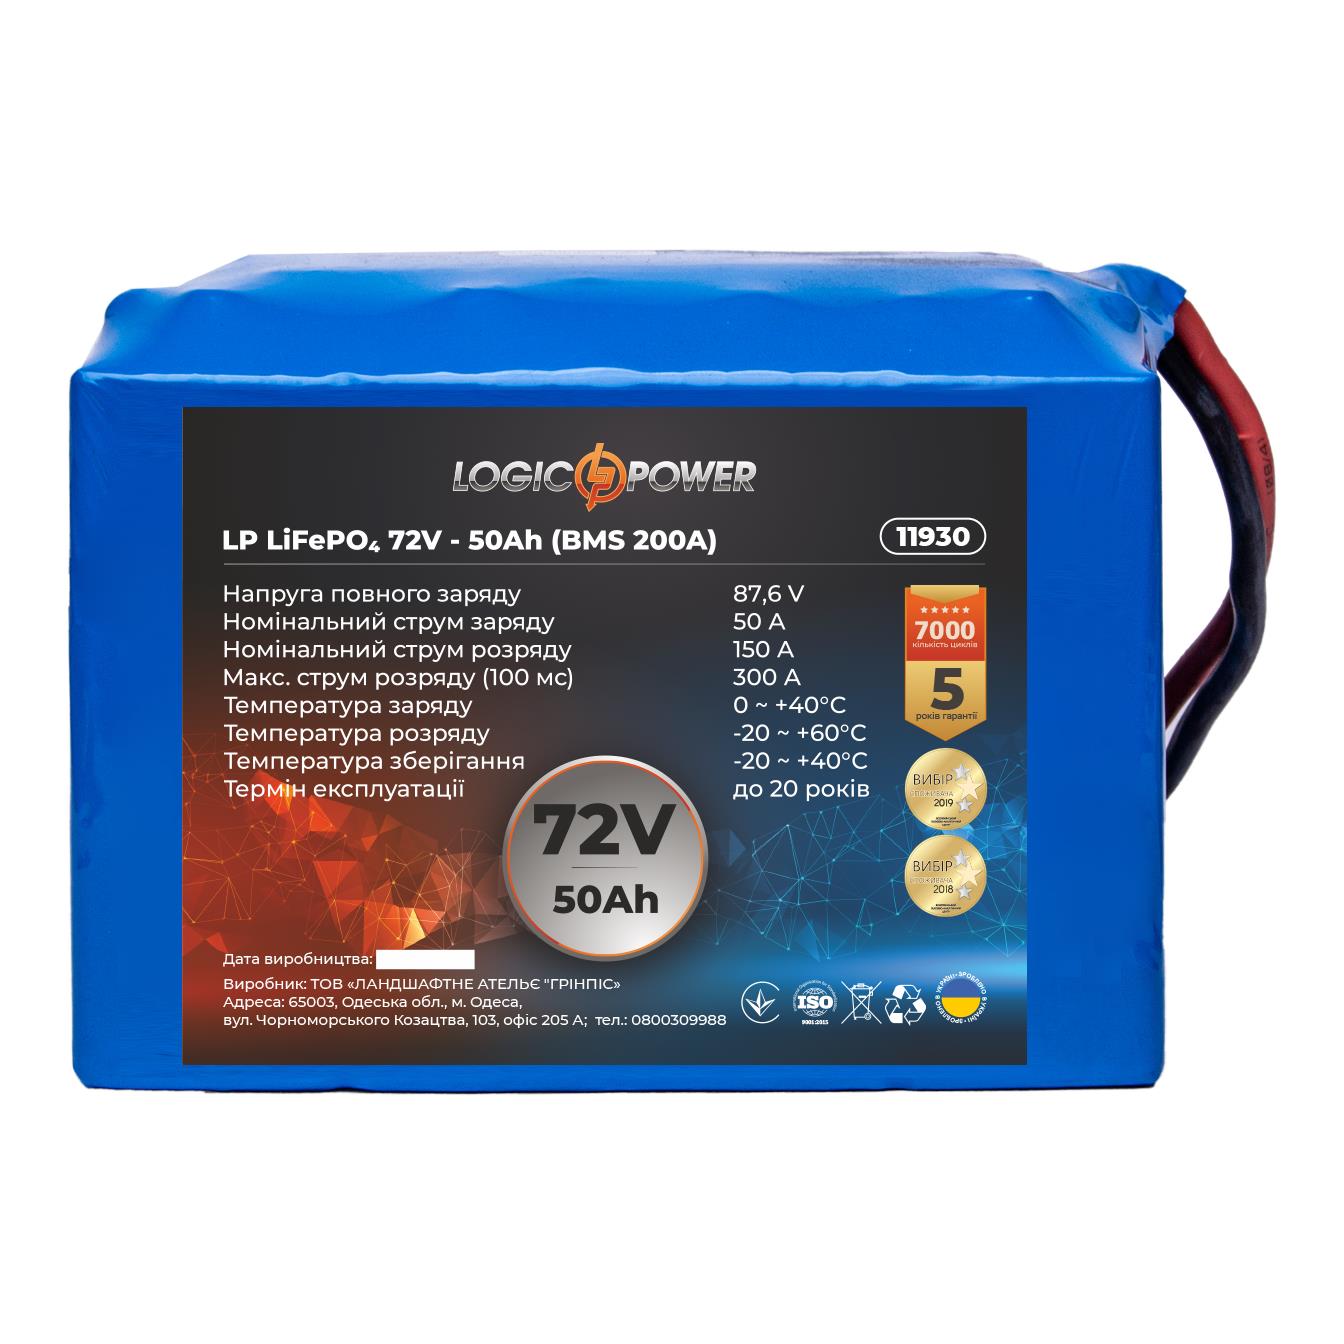 Отзывы аккумулятор 72 в LogicPower LP LiFePO4 72V - 50 Ah (BMS 200A) (11930) в Украине